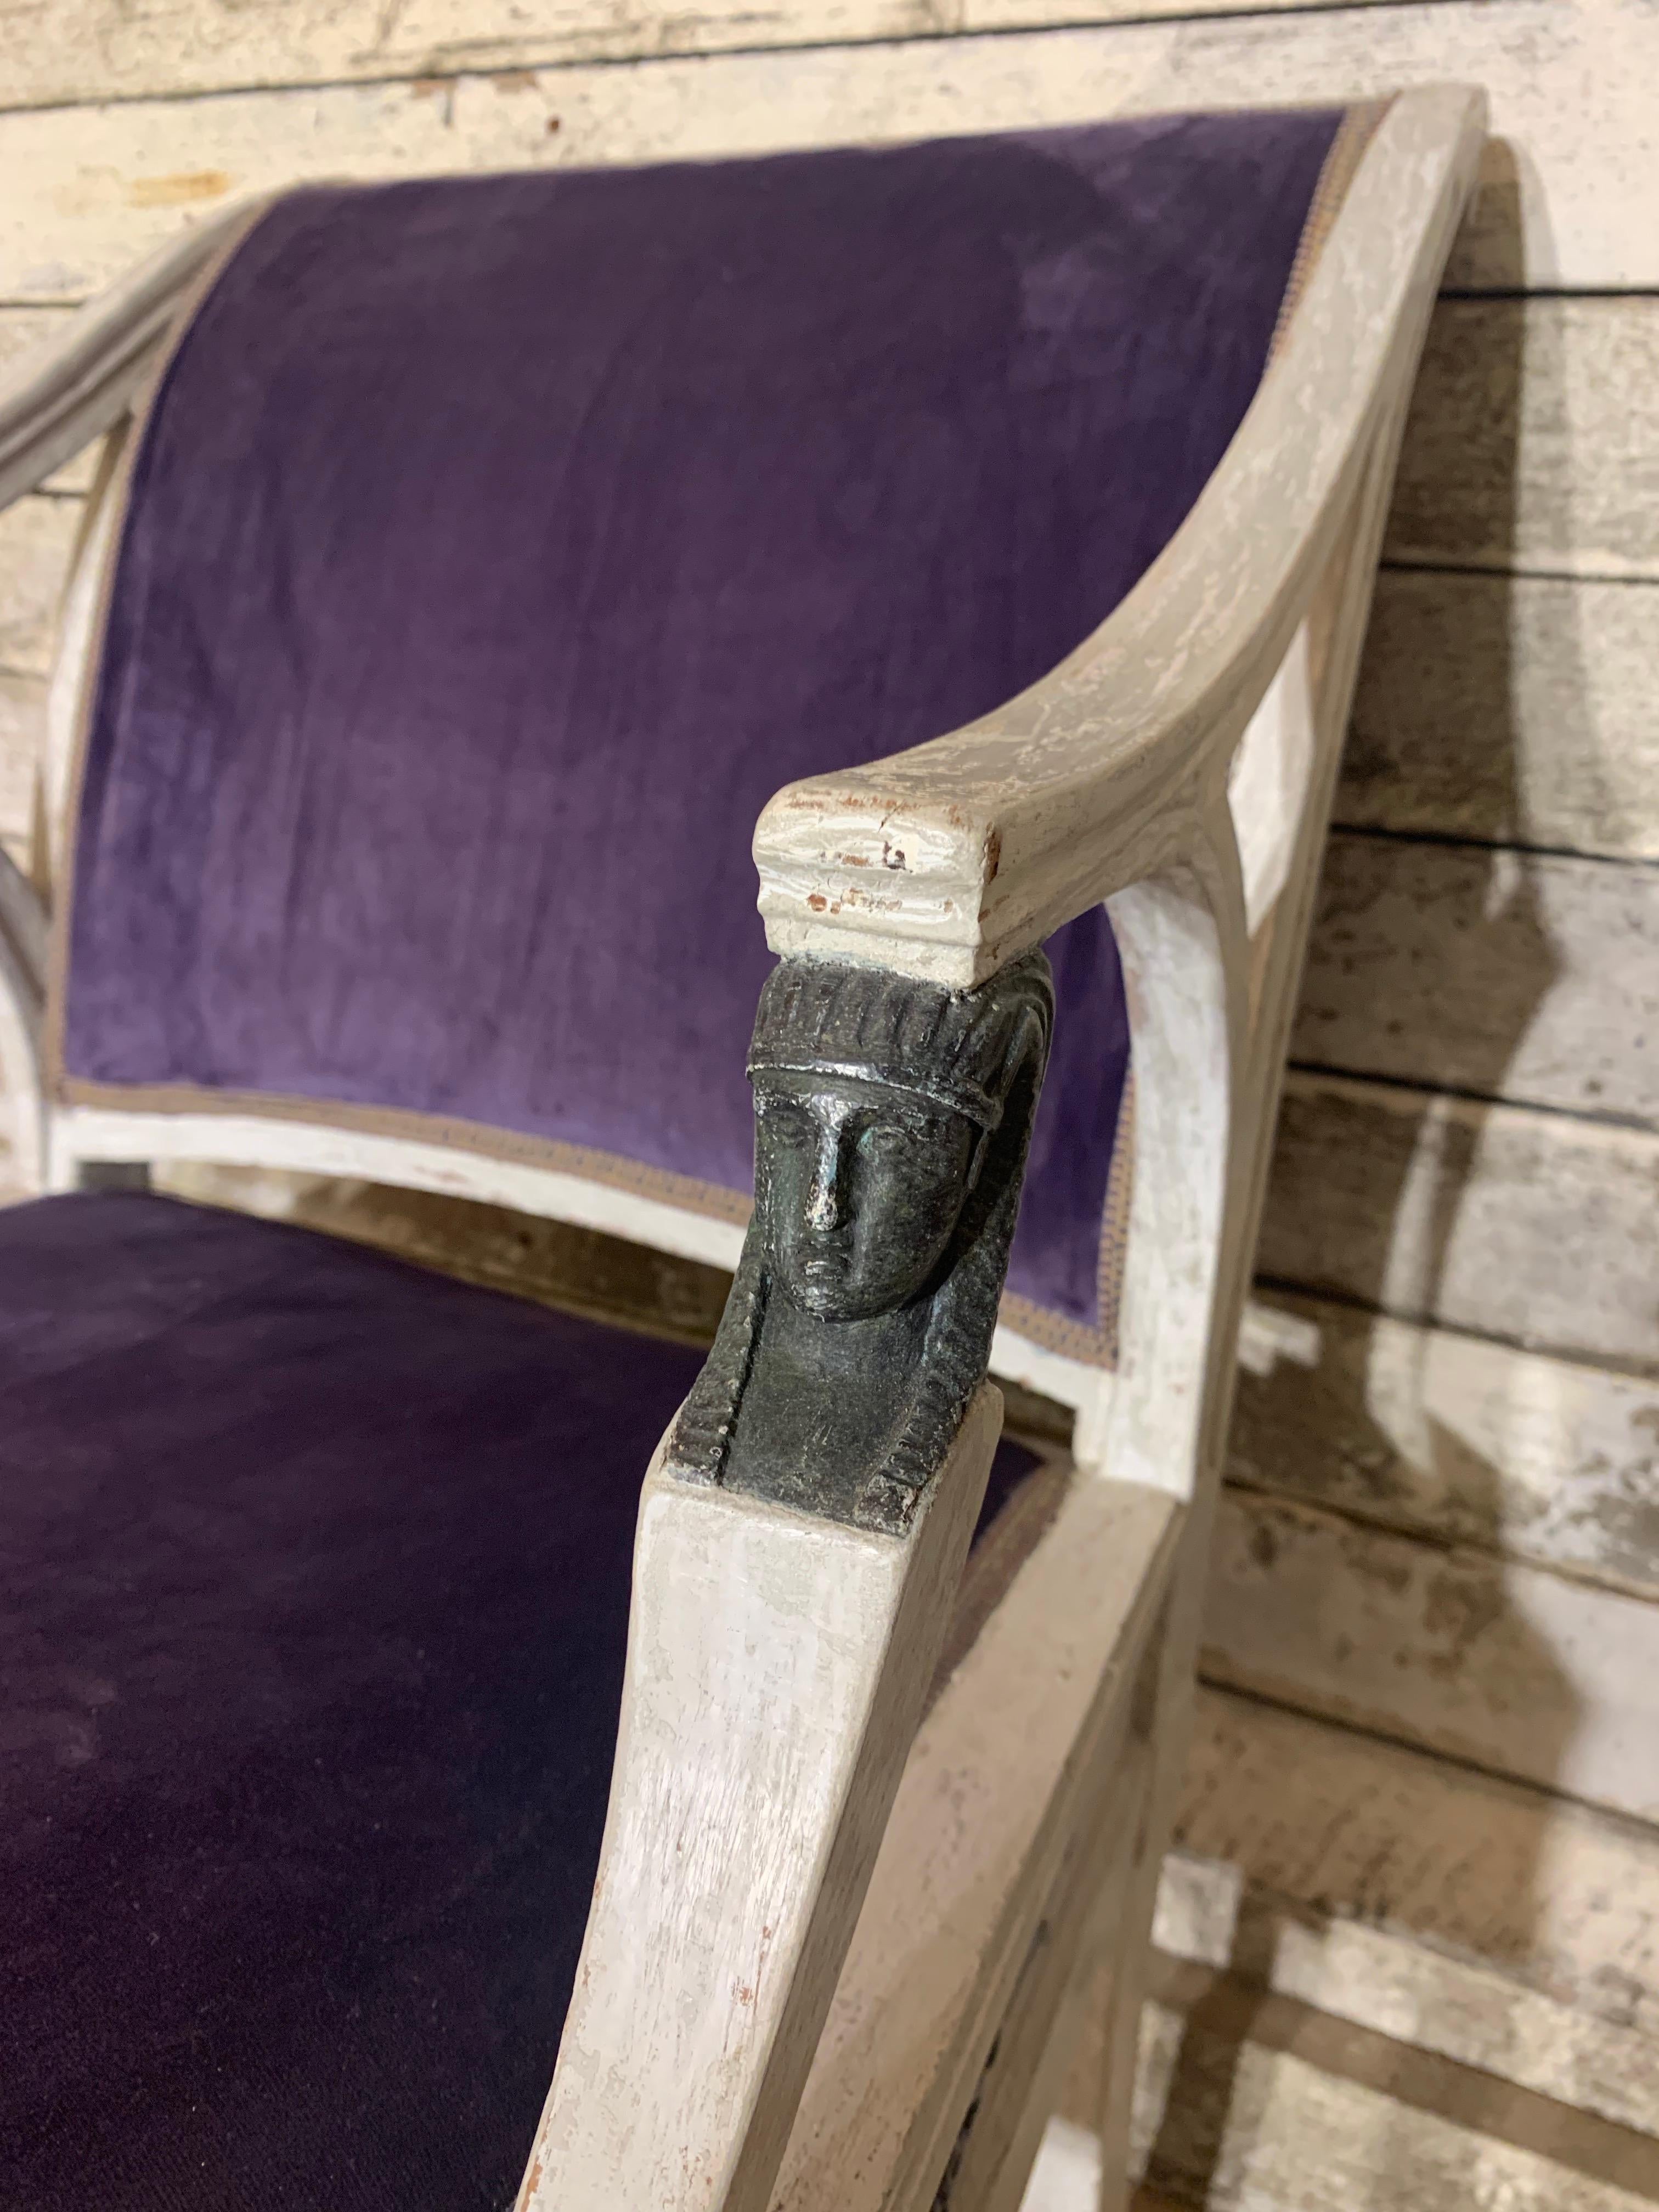 Ein Paar spätgustavianische Sessel von Ephraim Stahl, der von 1794 bis 1820 in Stockholm tätig war. Die Sessel sind nicht signiert.

Ephraim Sthal fertigte mehrere Stühle und Sessel für die schwedische Königsfamilie. Diese Stühle sind in grau-weißer